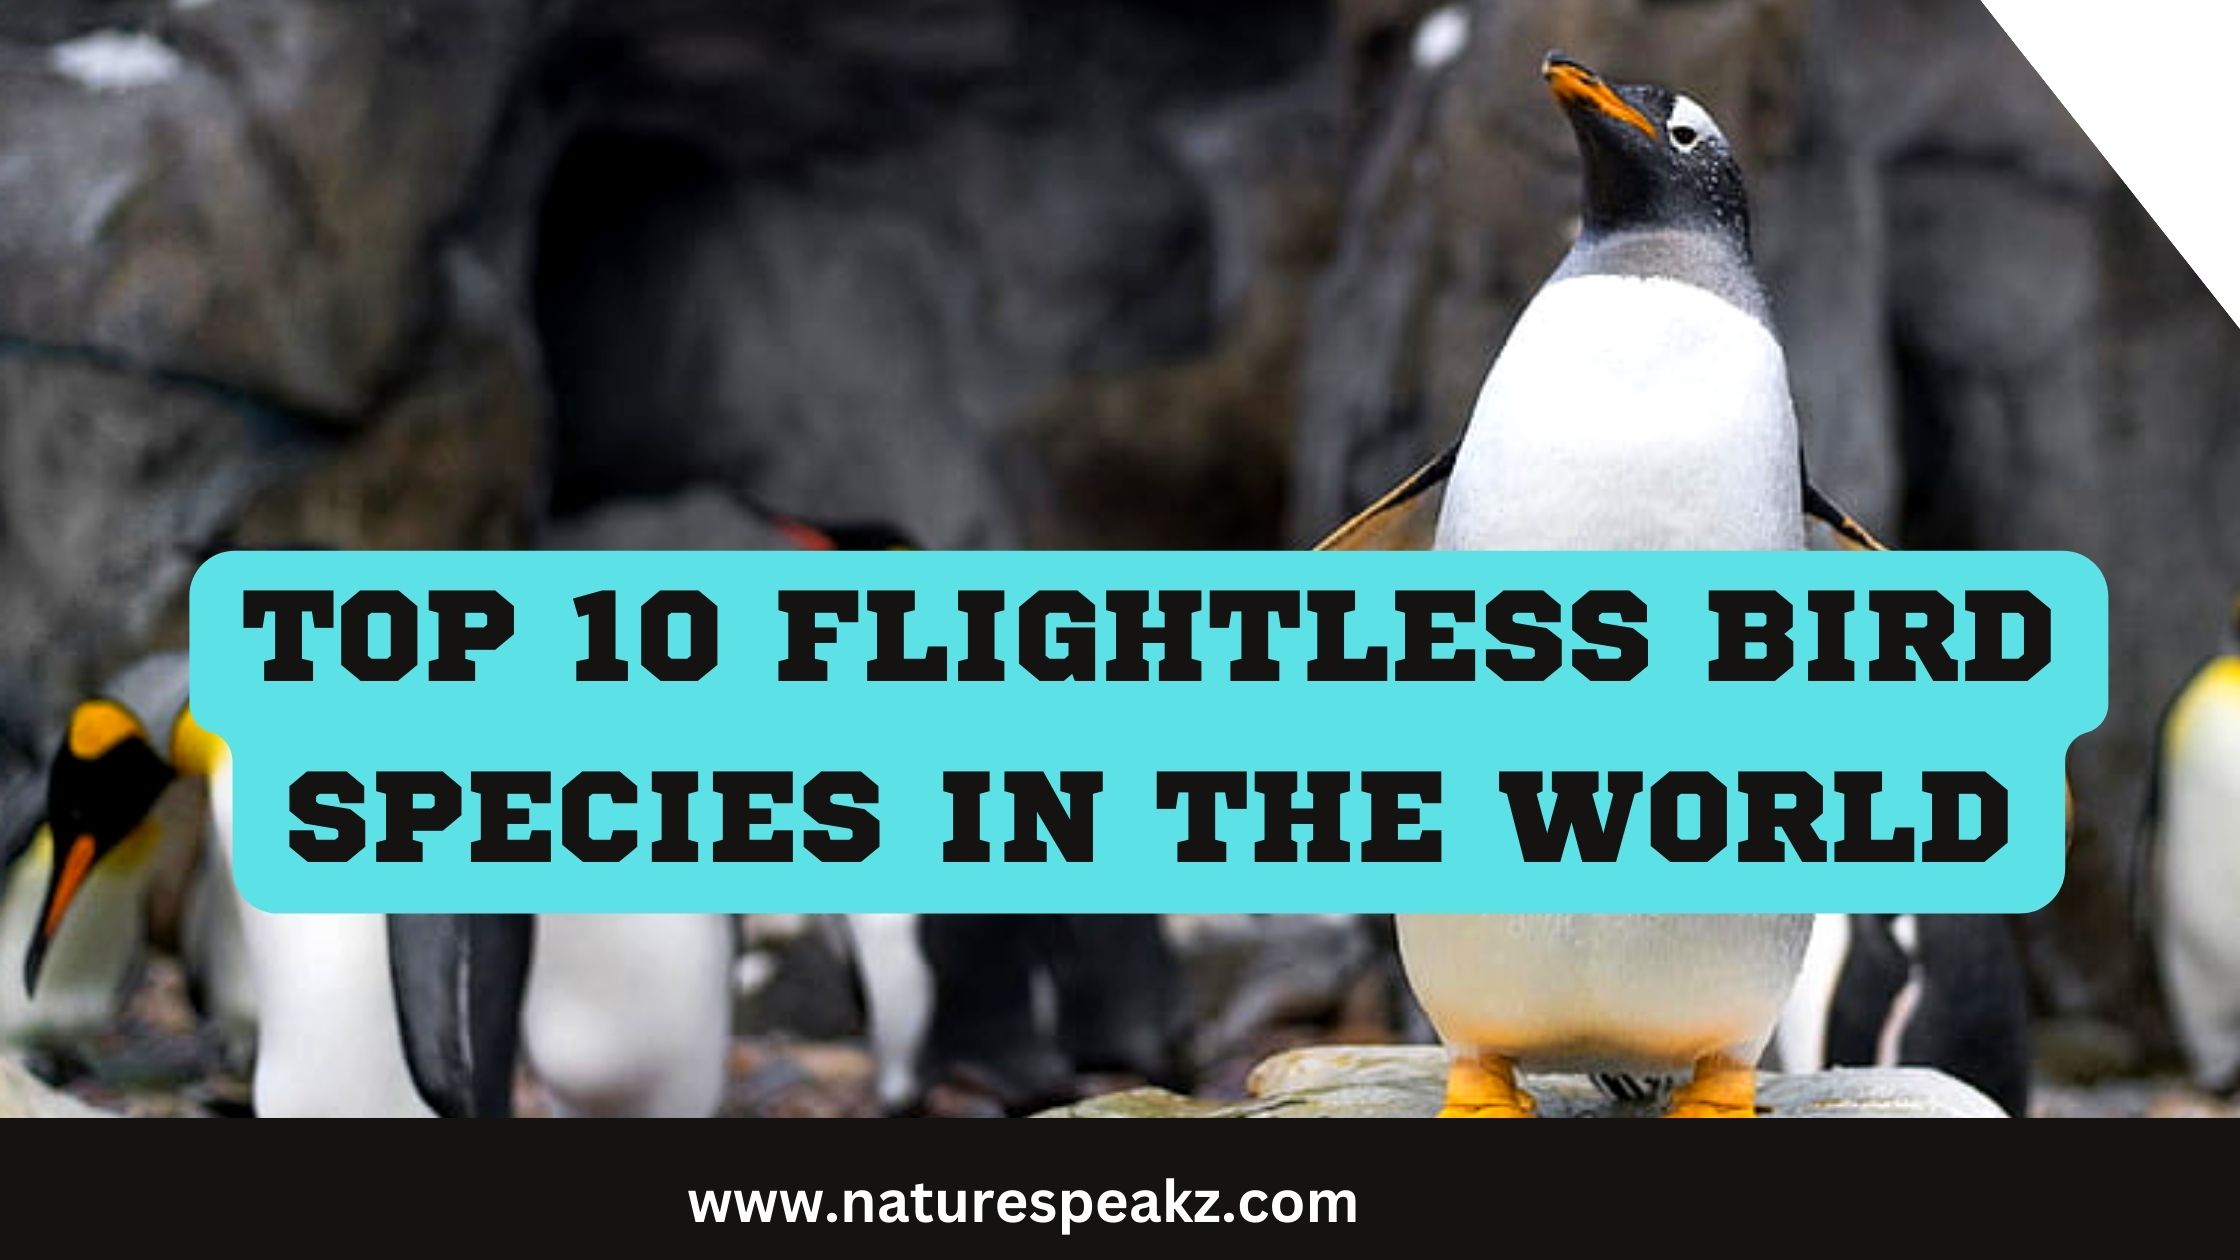 Top 10 Flightless Bird Species in The World